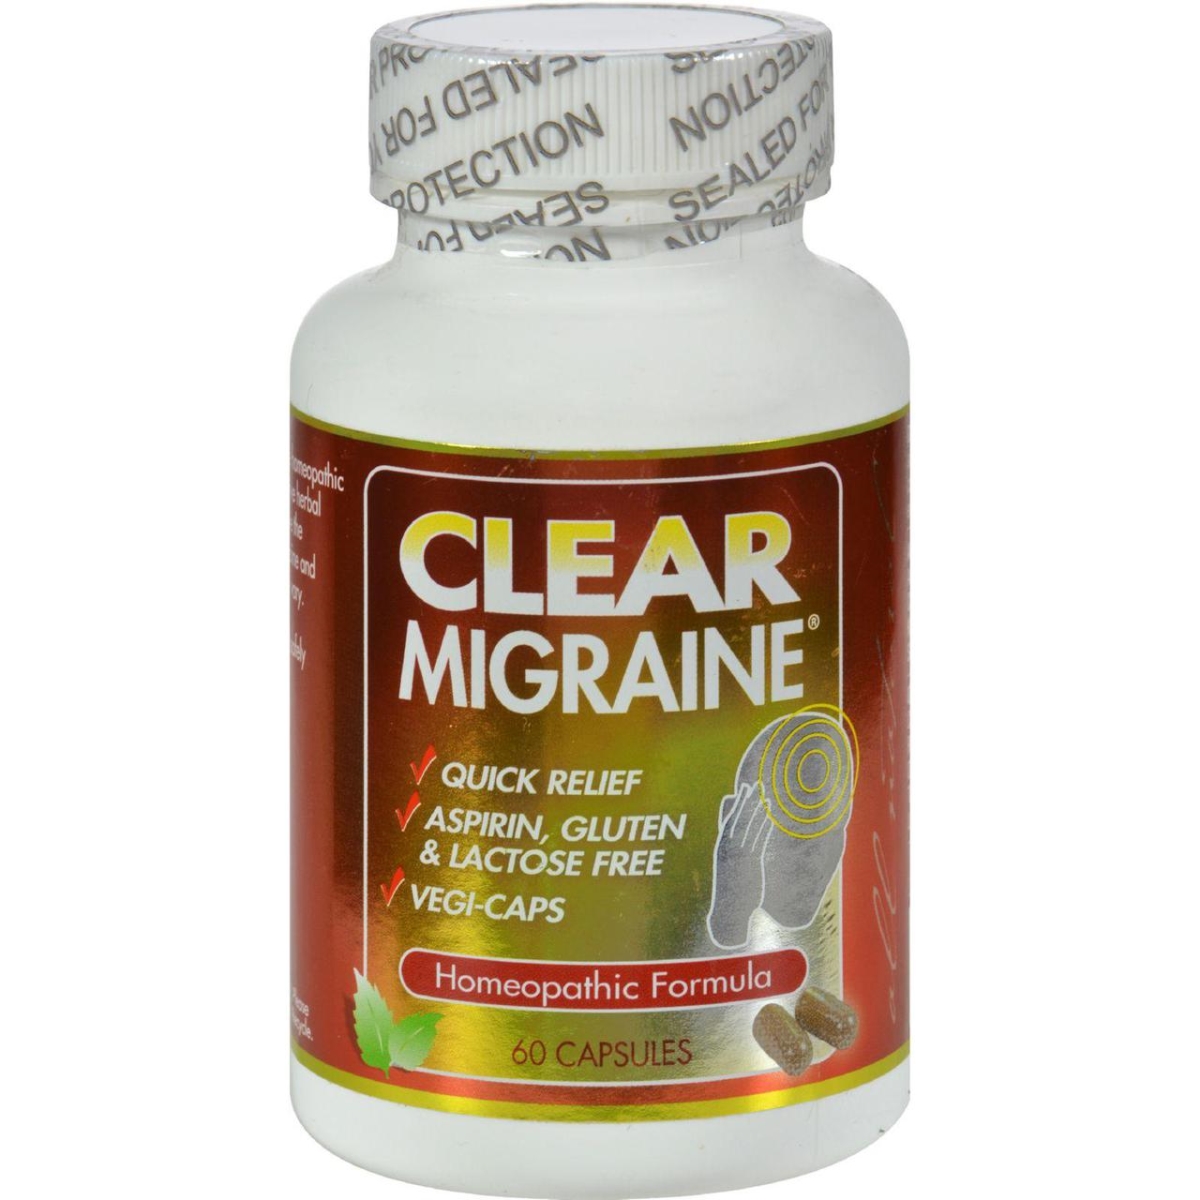 Hg0408856 Clear Migraine - 60 Capsules